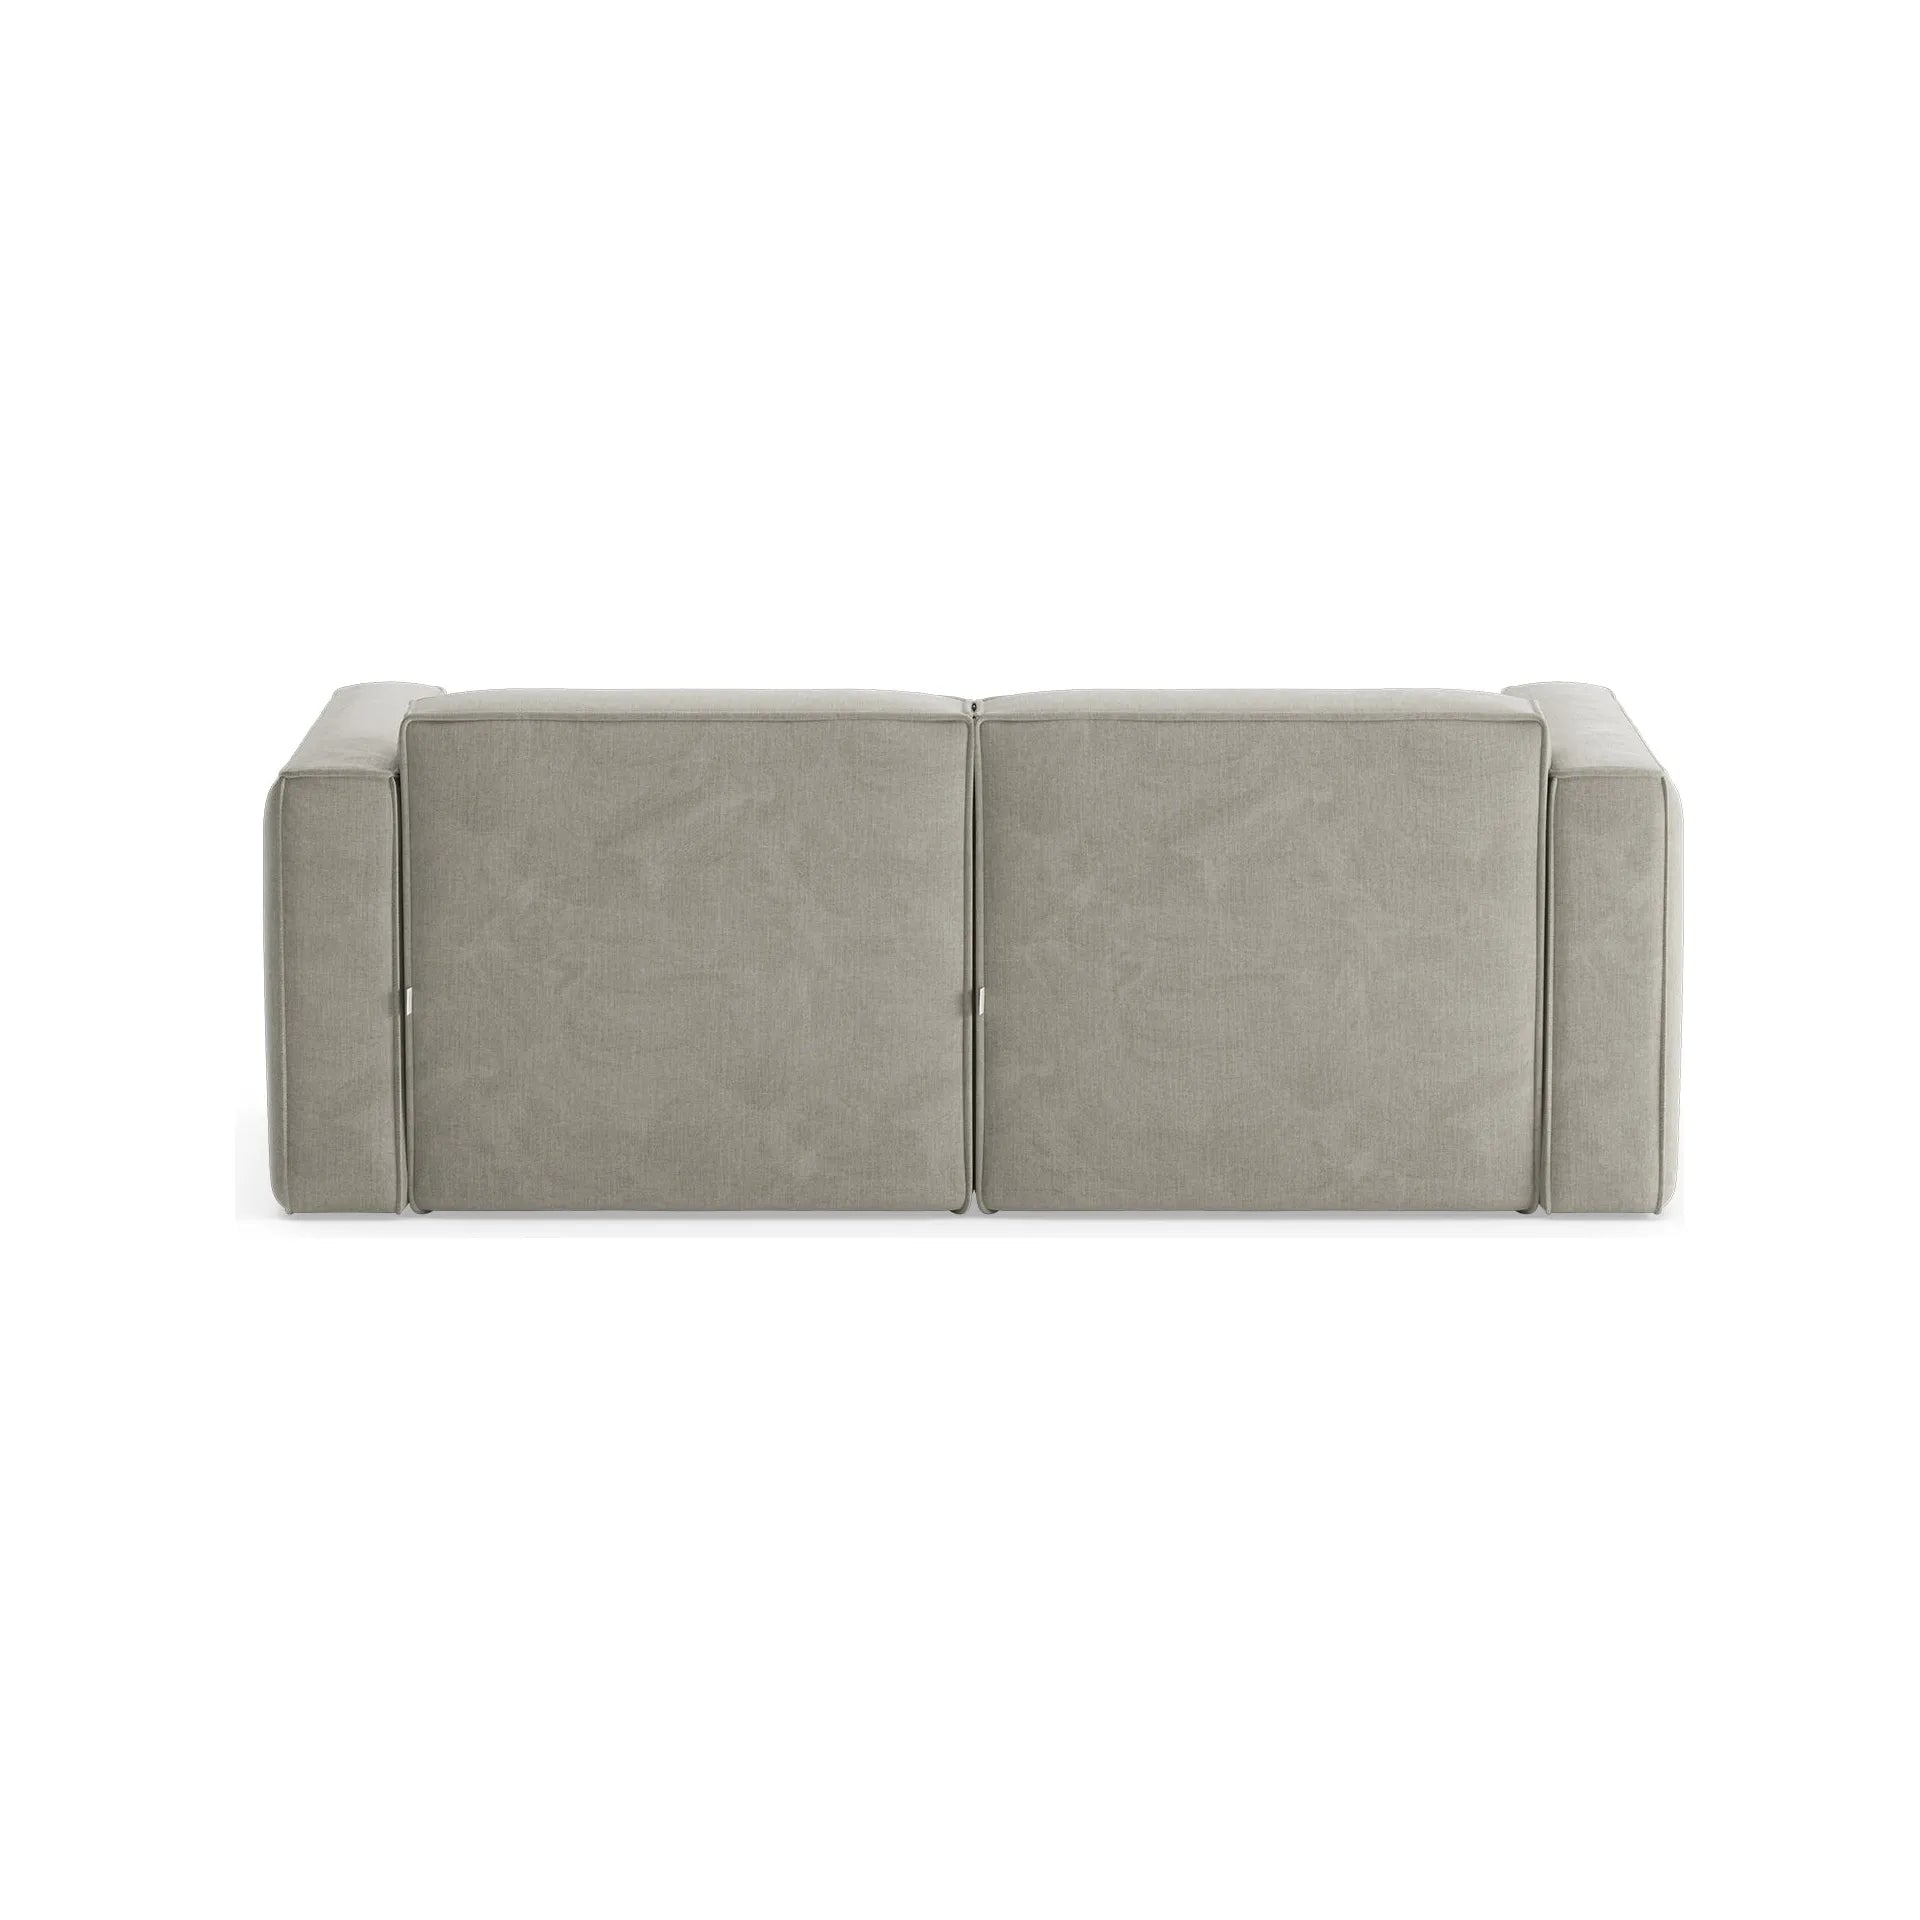 SLAY 2 vietų sofa, šviesiai pilka spalva